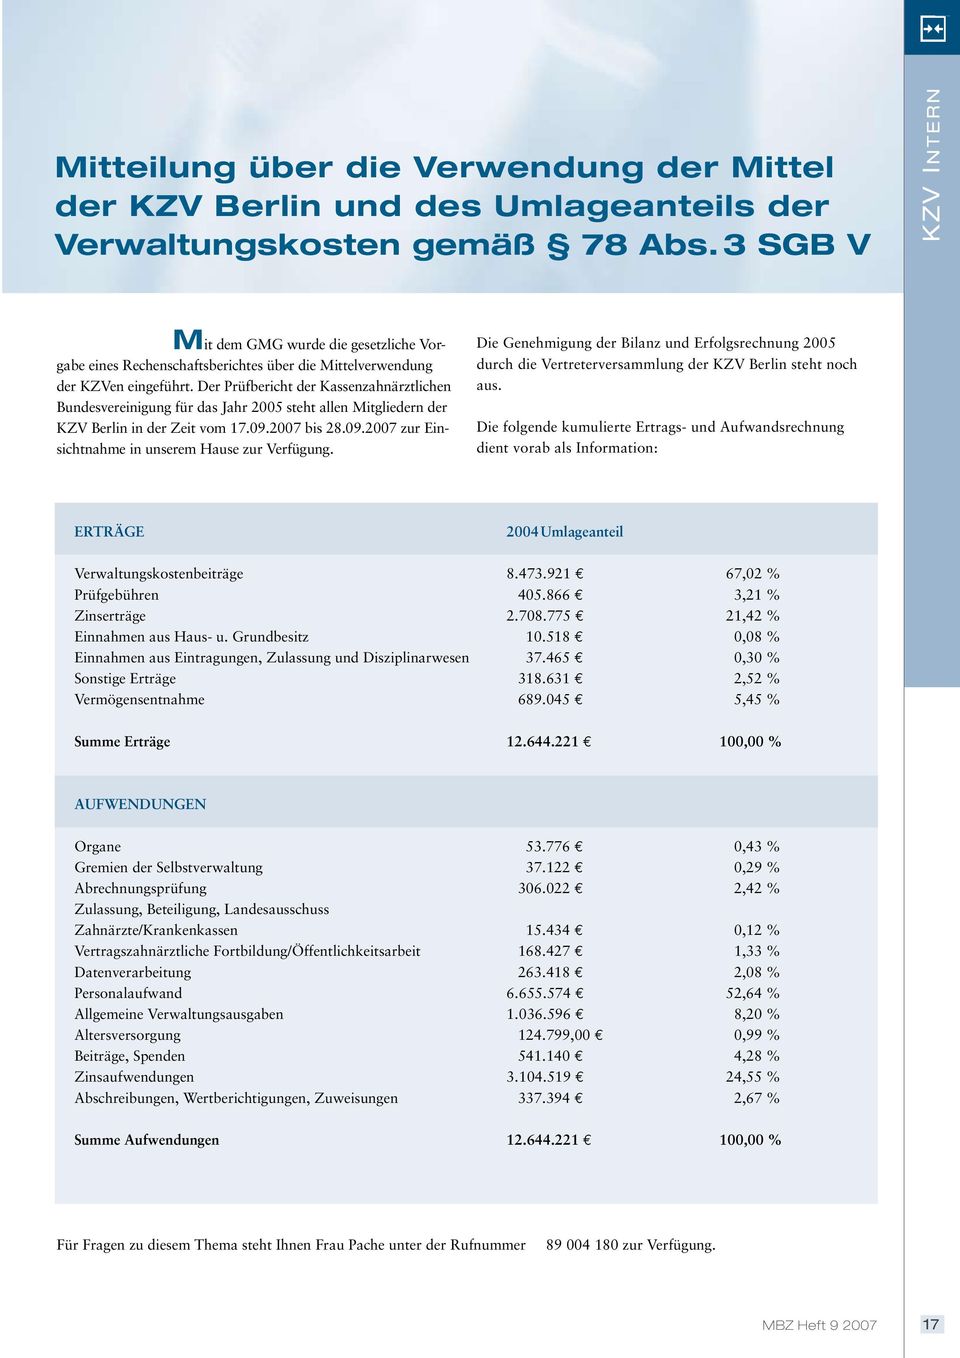 Der Prüfbericht der Kassenzahnärztlichen Bundesvereinigung für das Jahr 2005 steht allen Mitgliedern der KZV Berlin in der Zeit vom 17.09.2007 bis 28.09.2007 zur Einsichtnahme in unserem Hause zur Verfügung.